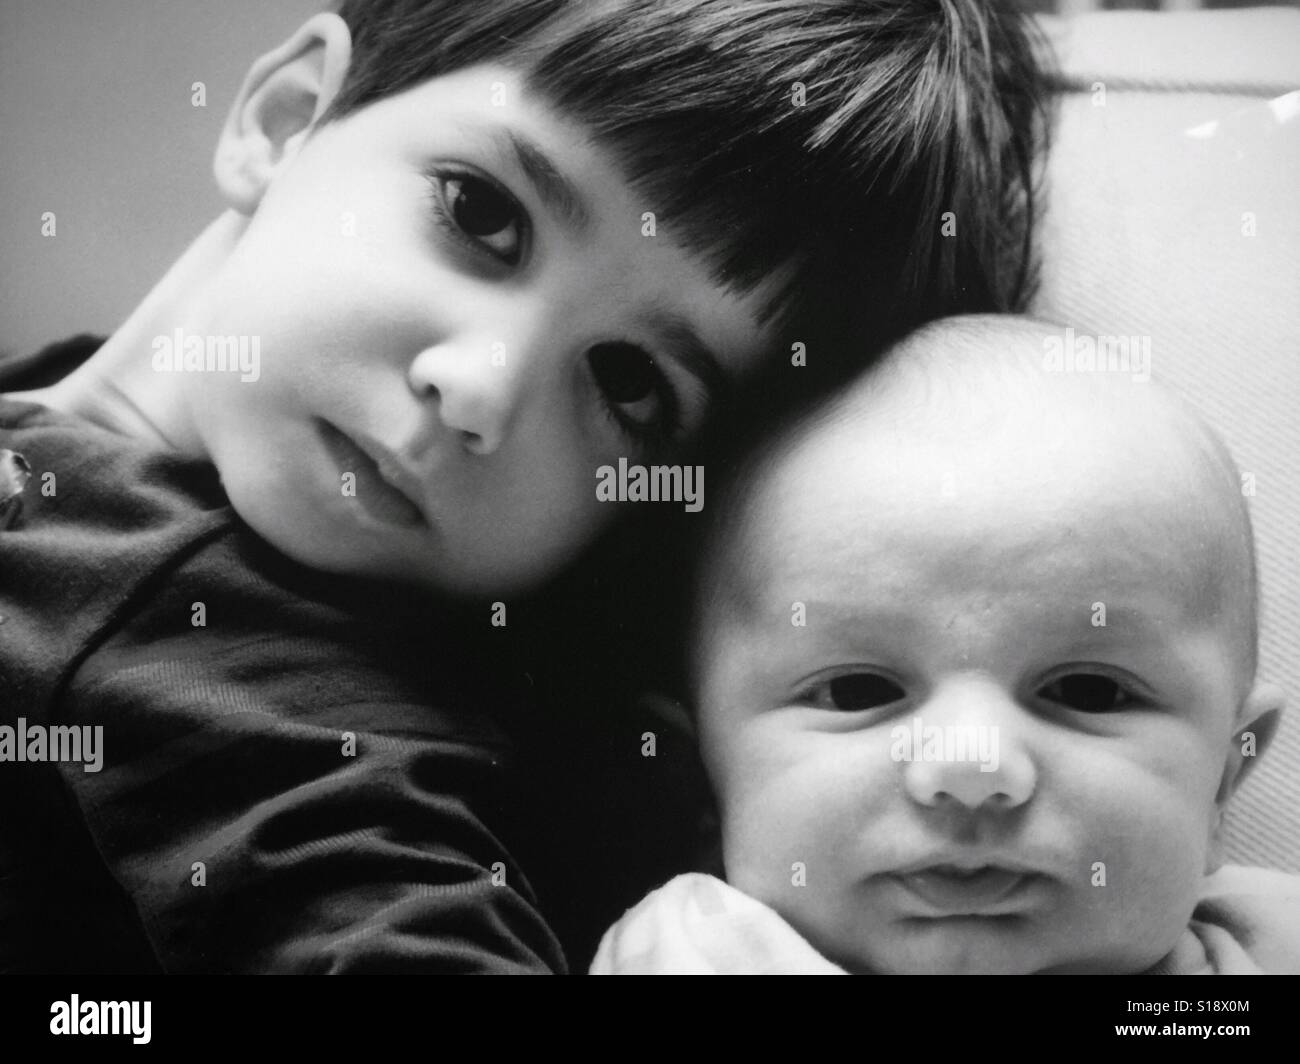 Une image en noir et blanc d'une fille et de son petit frère Banque D'Images